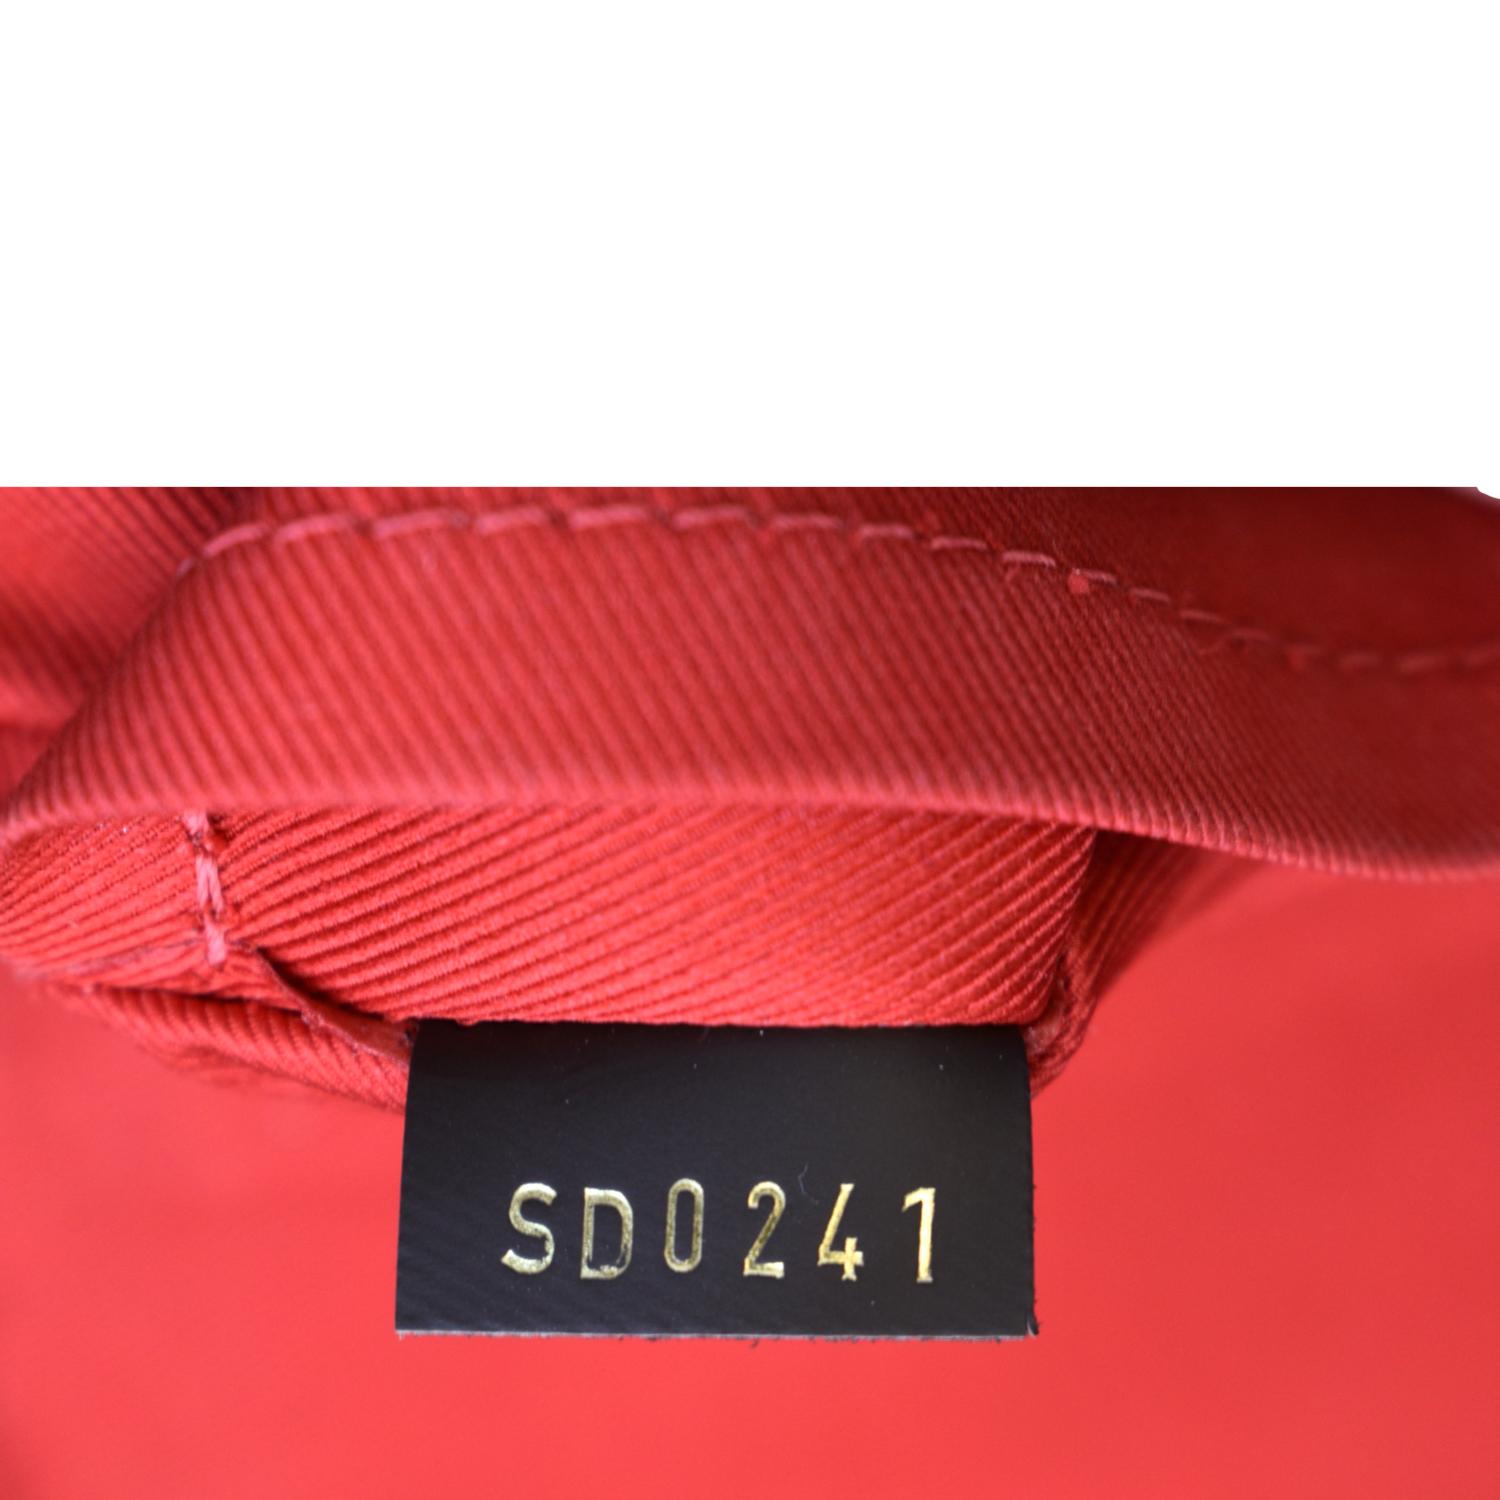 Croisette crossbody bag Louis Vuitton Multicolour in Cotton - 31340955